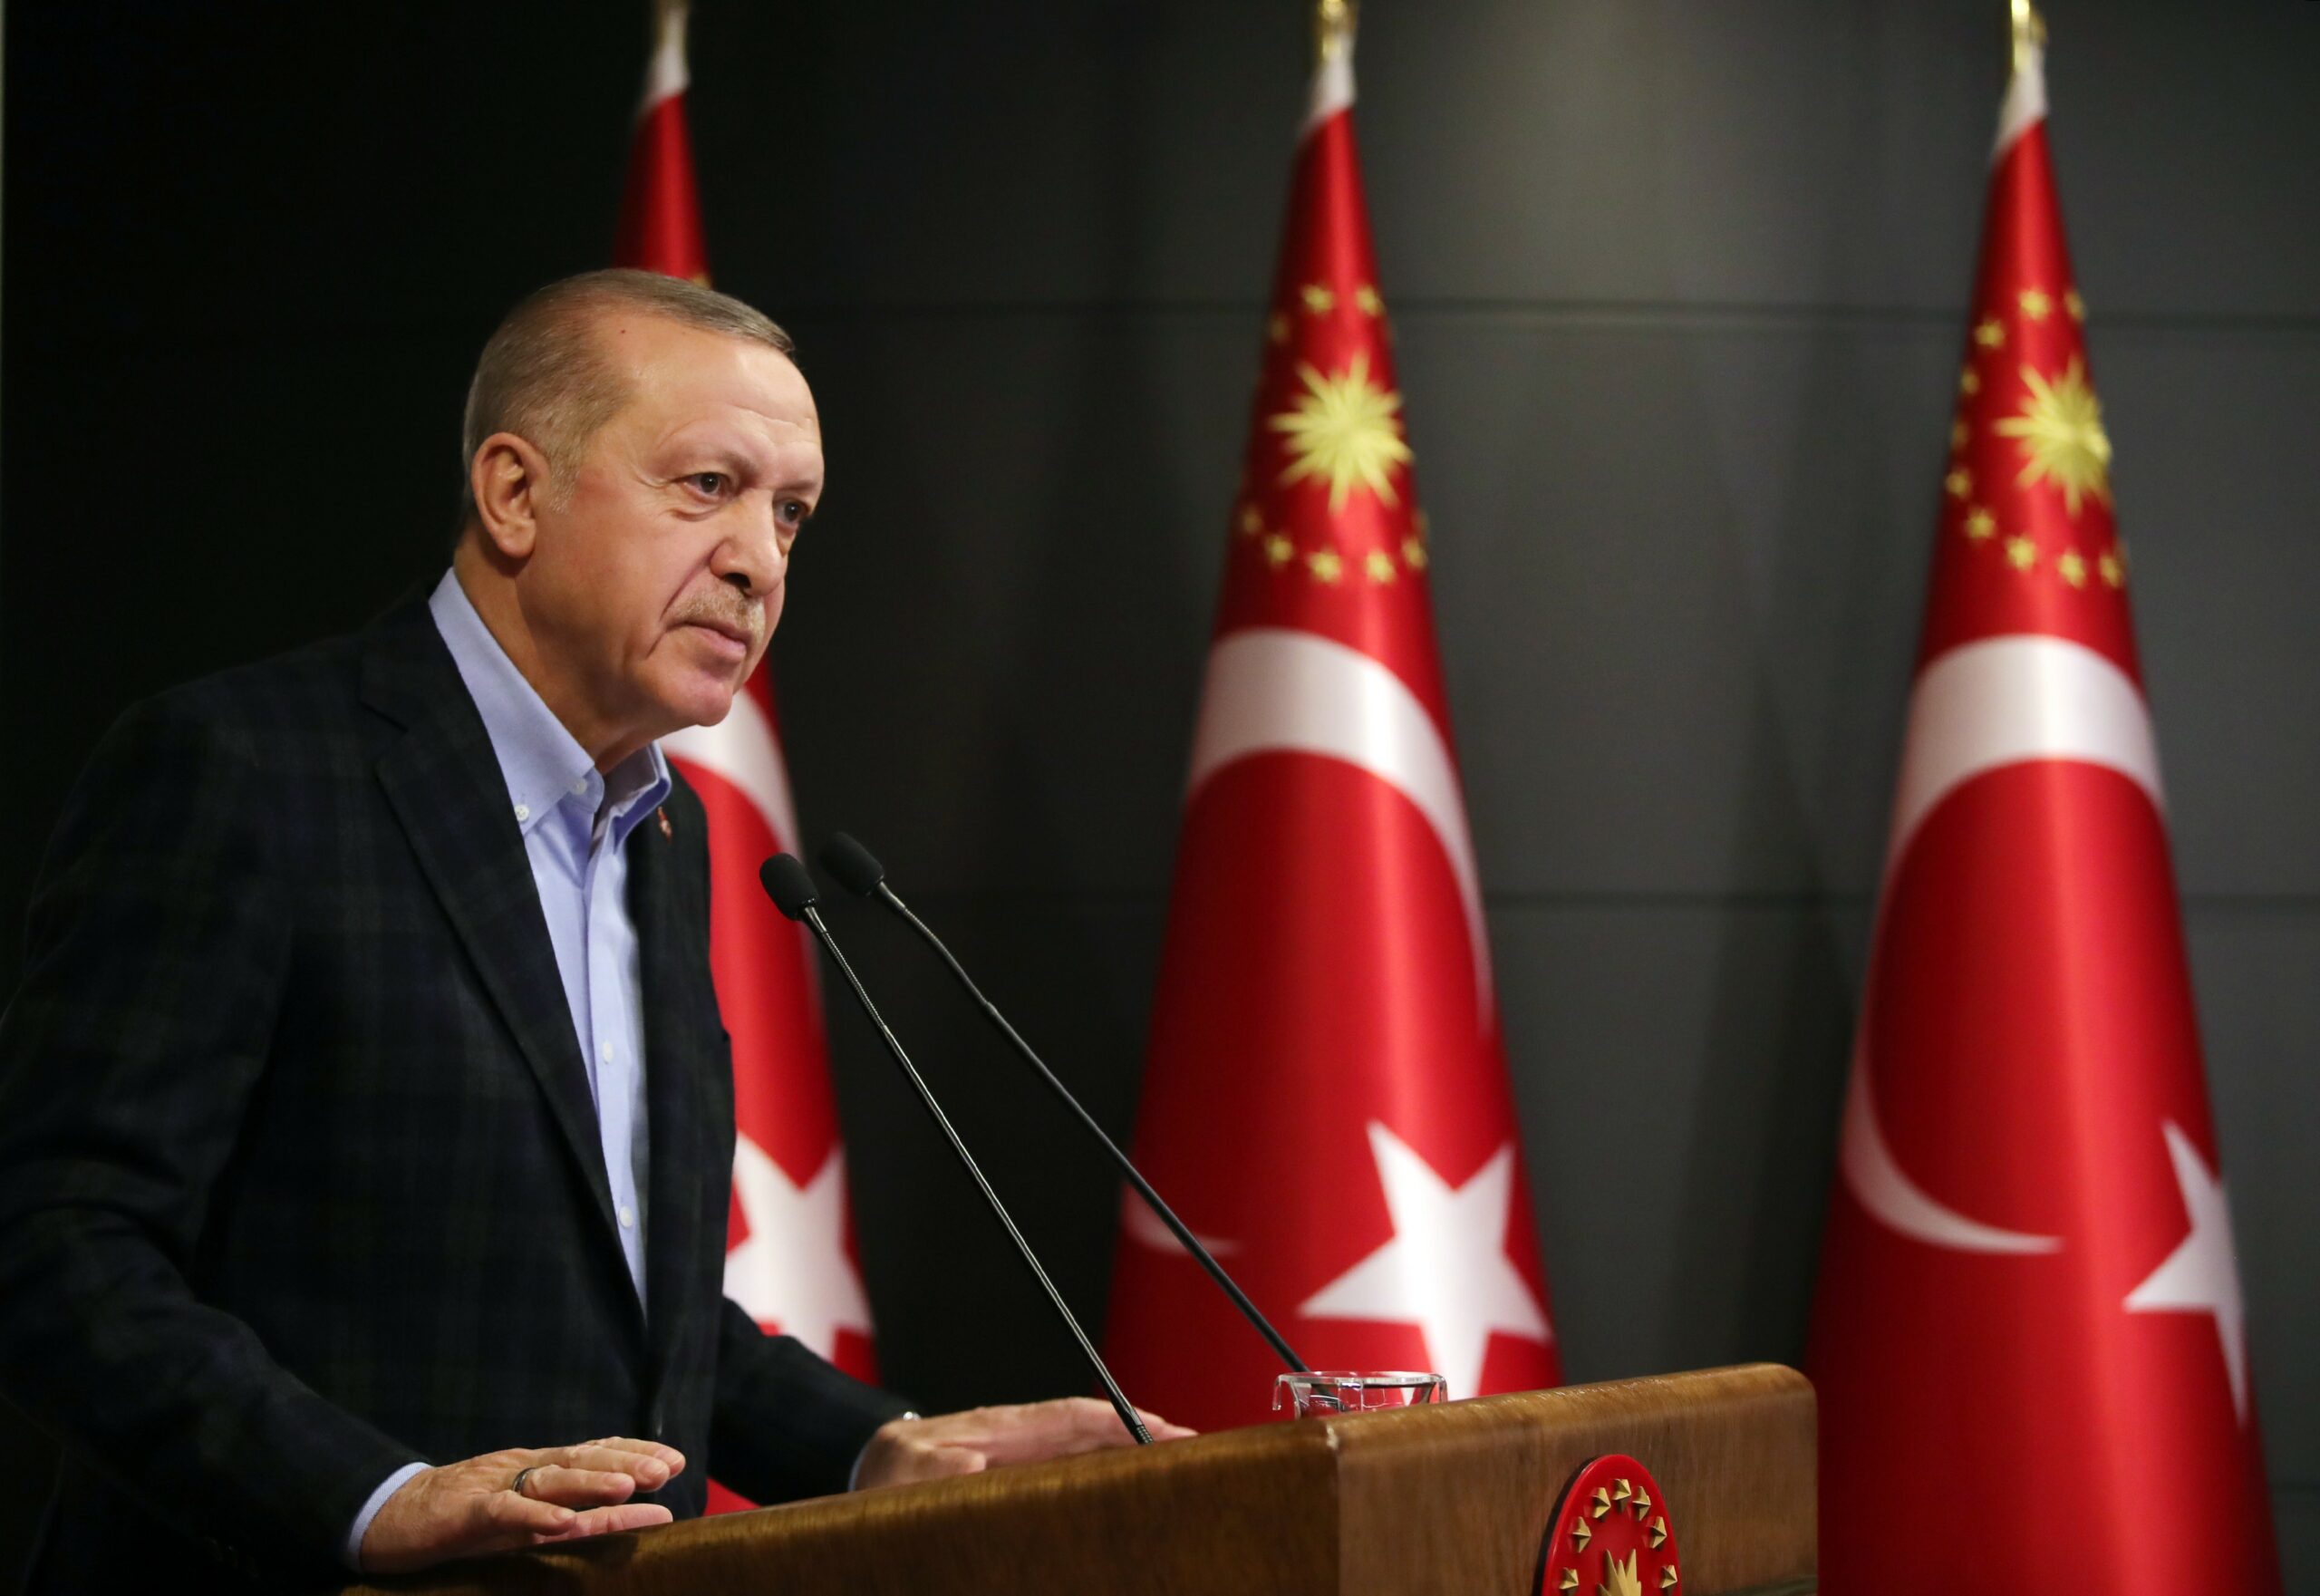 Cumhurbaşkanı Erdoğan, Zelenski ve Guterres ile görüşecek